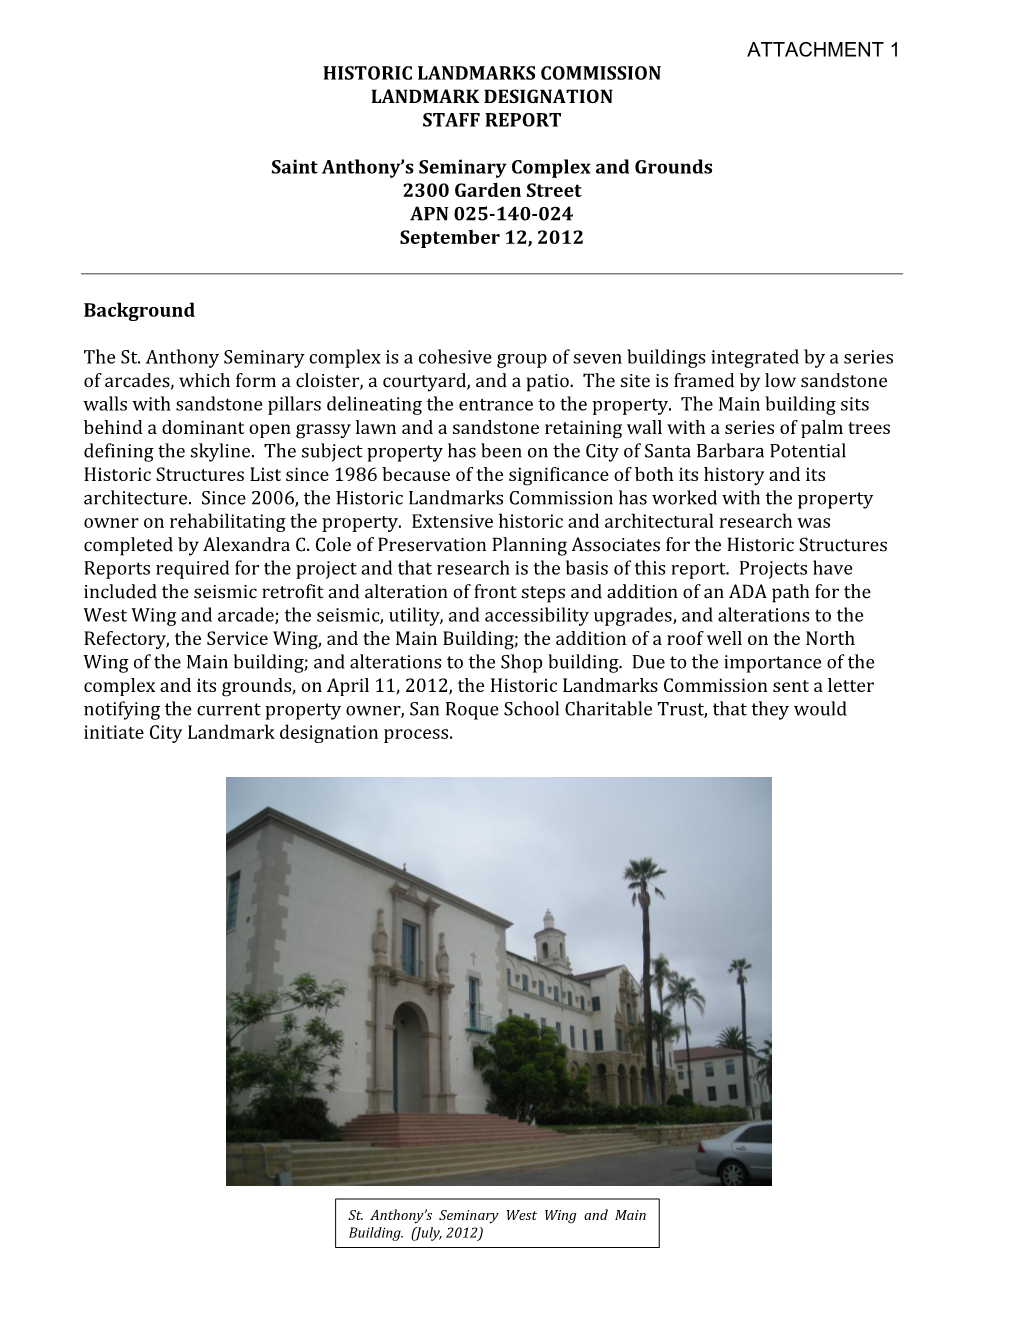 Historic Landmarks Commission Landmark Designation Staff Report